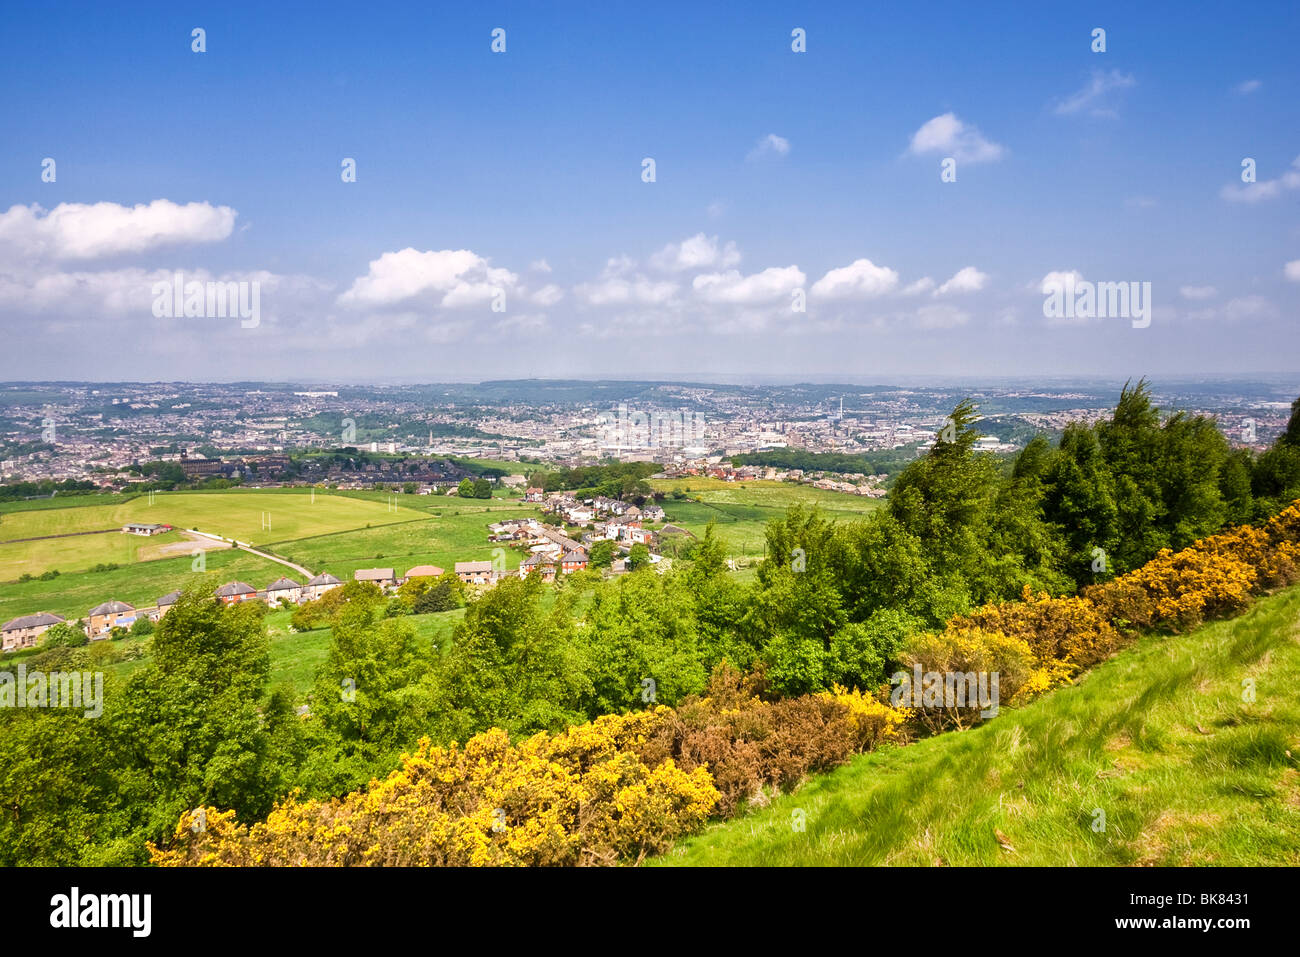 Vista de la ciudad de Huddersfield desde la colina del castillo, Huddersfield, West Yorkshire, Reino Unido Foto de stock